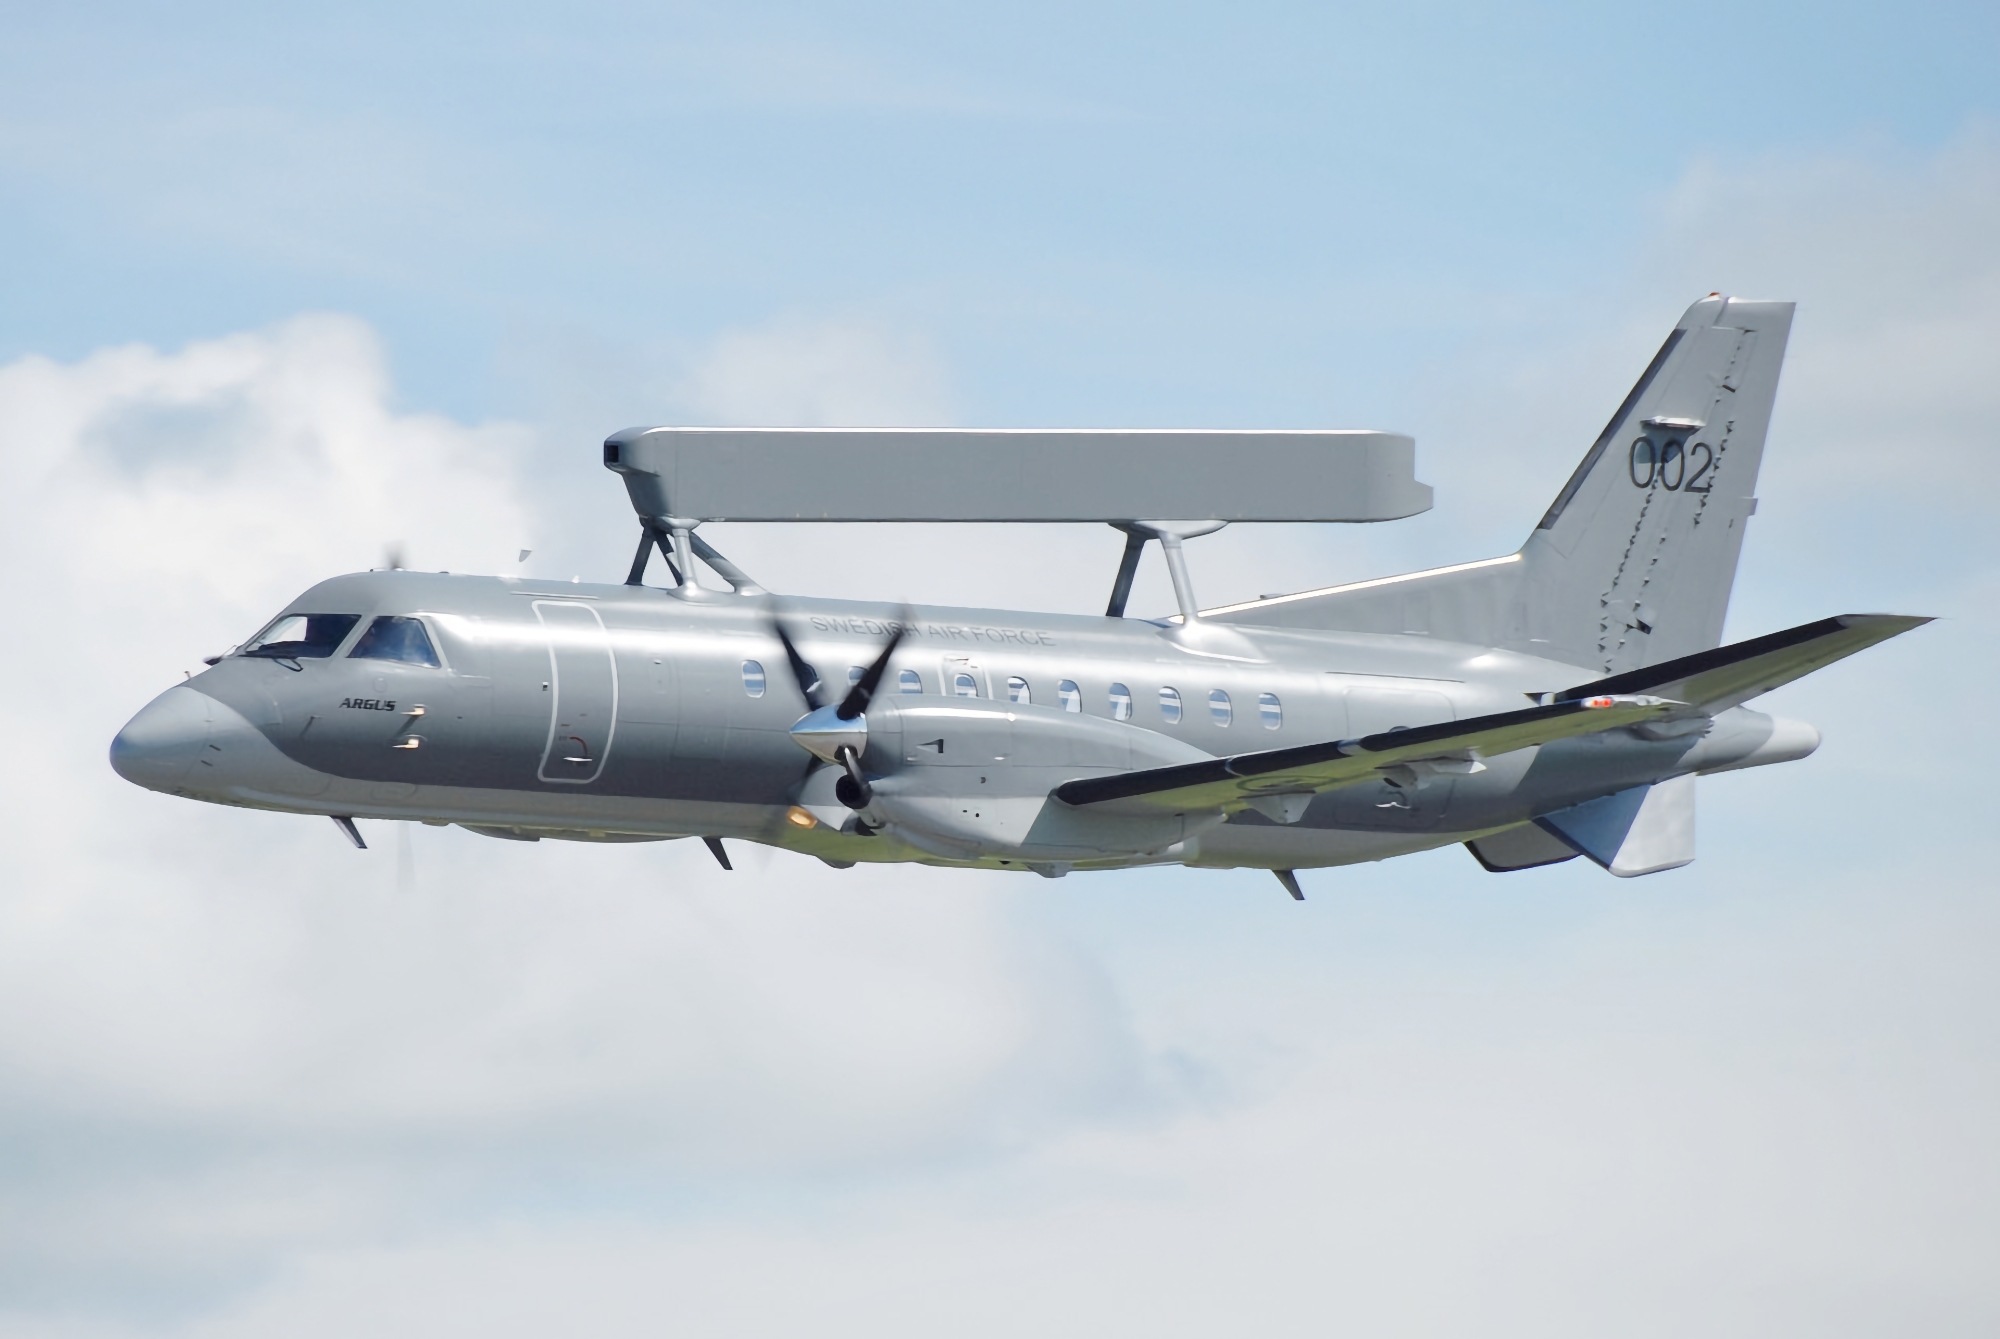 Kontrakt värt 58 000 000 USD: Polen köper två Saab 340B AEW-300 långdistansflygplan för radarövervakning